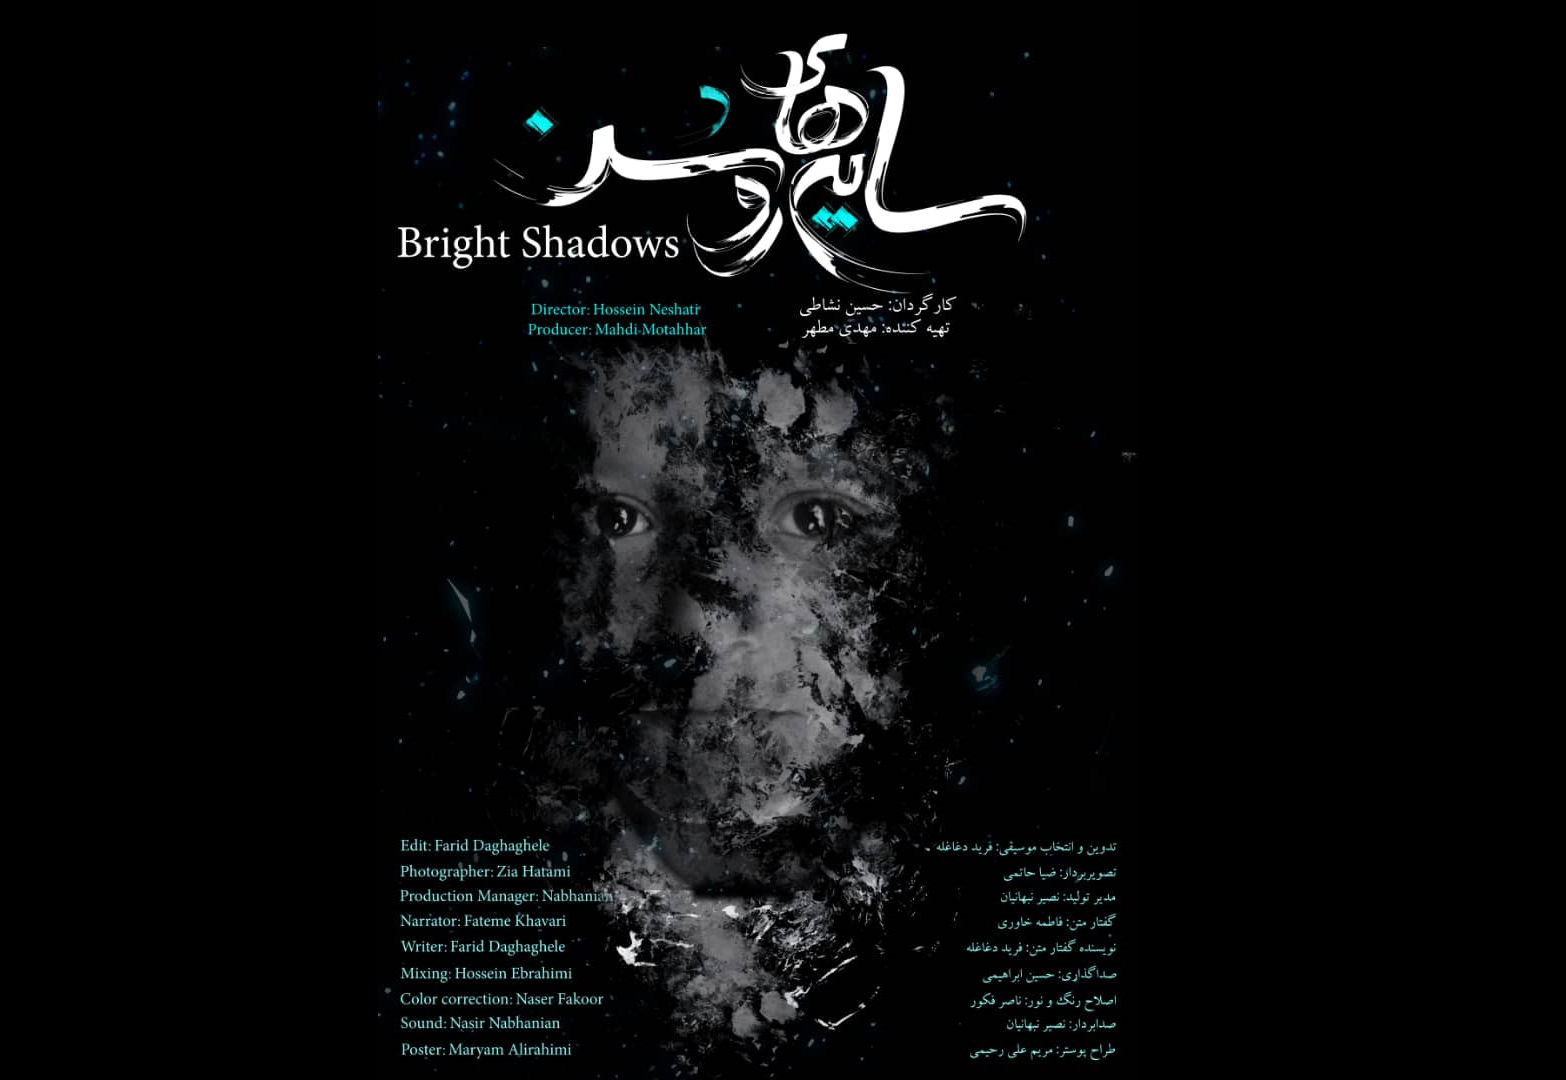 مستند سایه‌های روشن با موضوع زنان جنگ زده سوری آماده نمایش شد